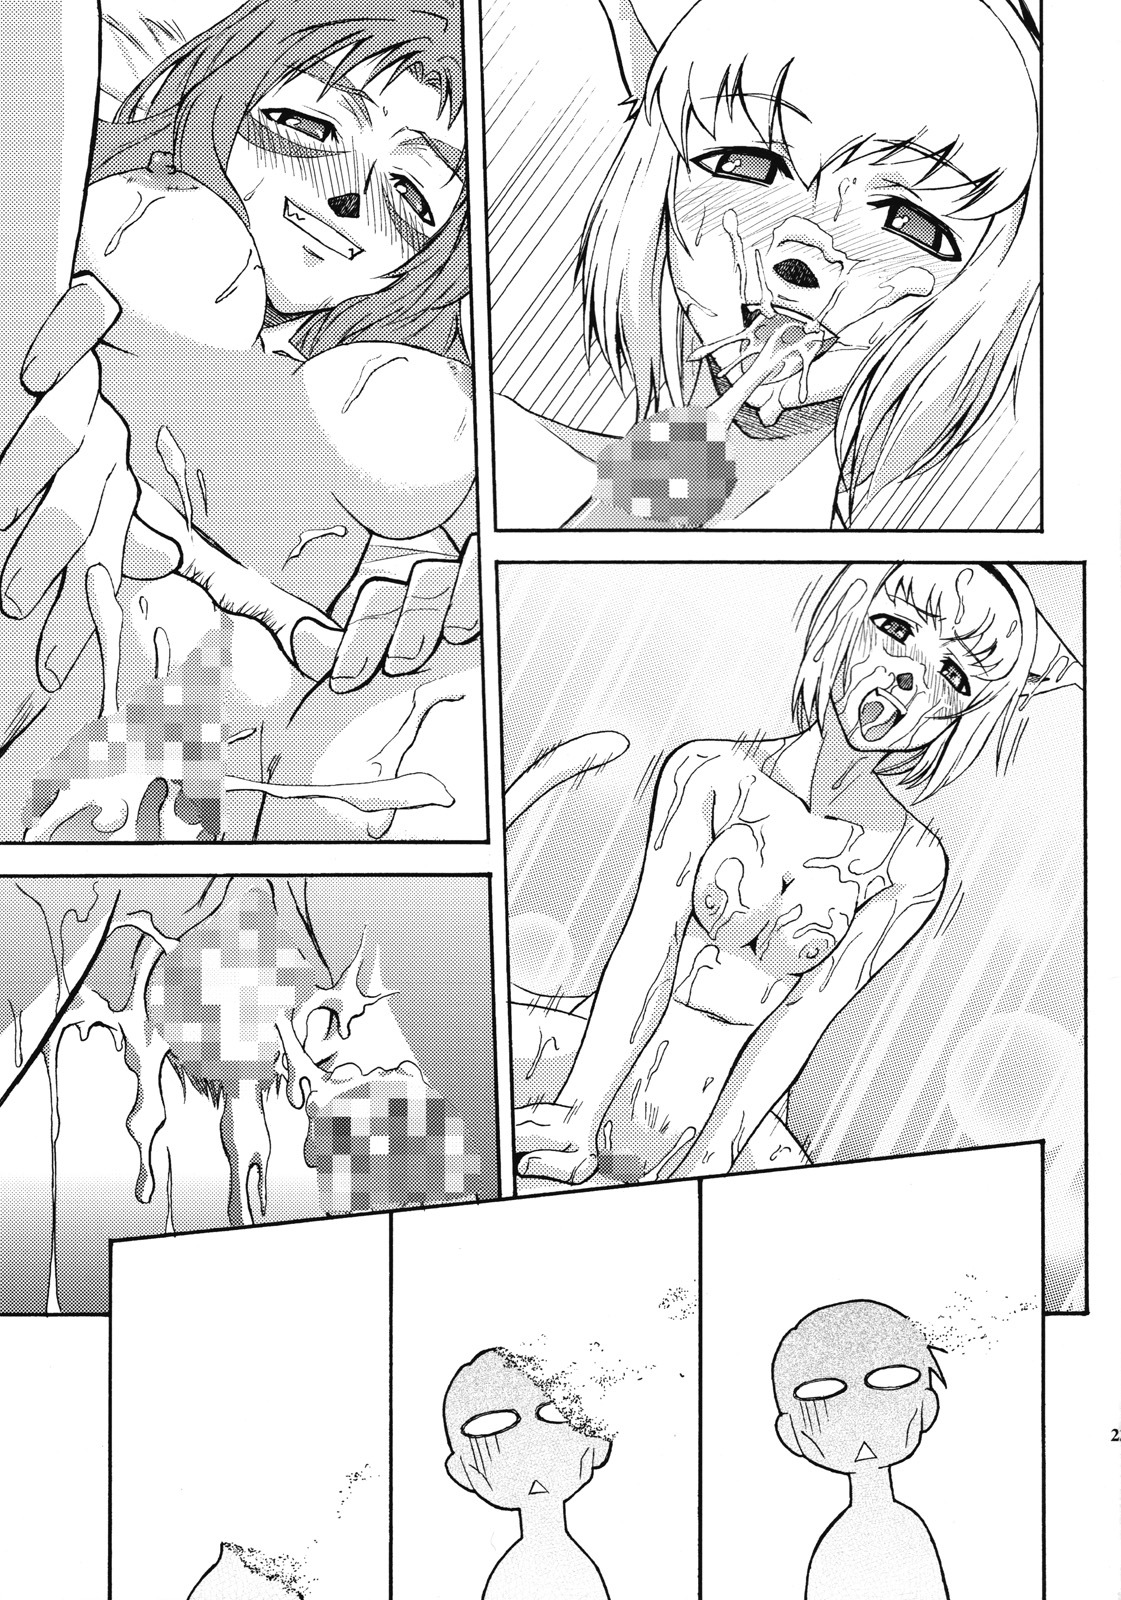 [ARCHENEMY (Kasumi Ryo)] Ein Joghurt wie ein Honig-Dessert. EXTENDED EDITION (Final Fantasy XI) page 22 full